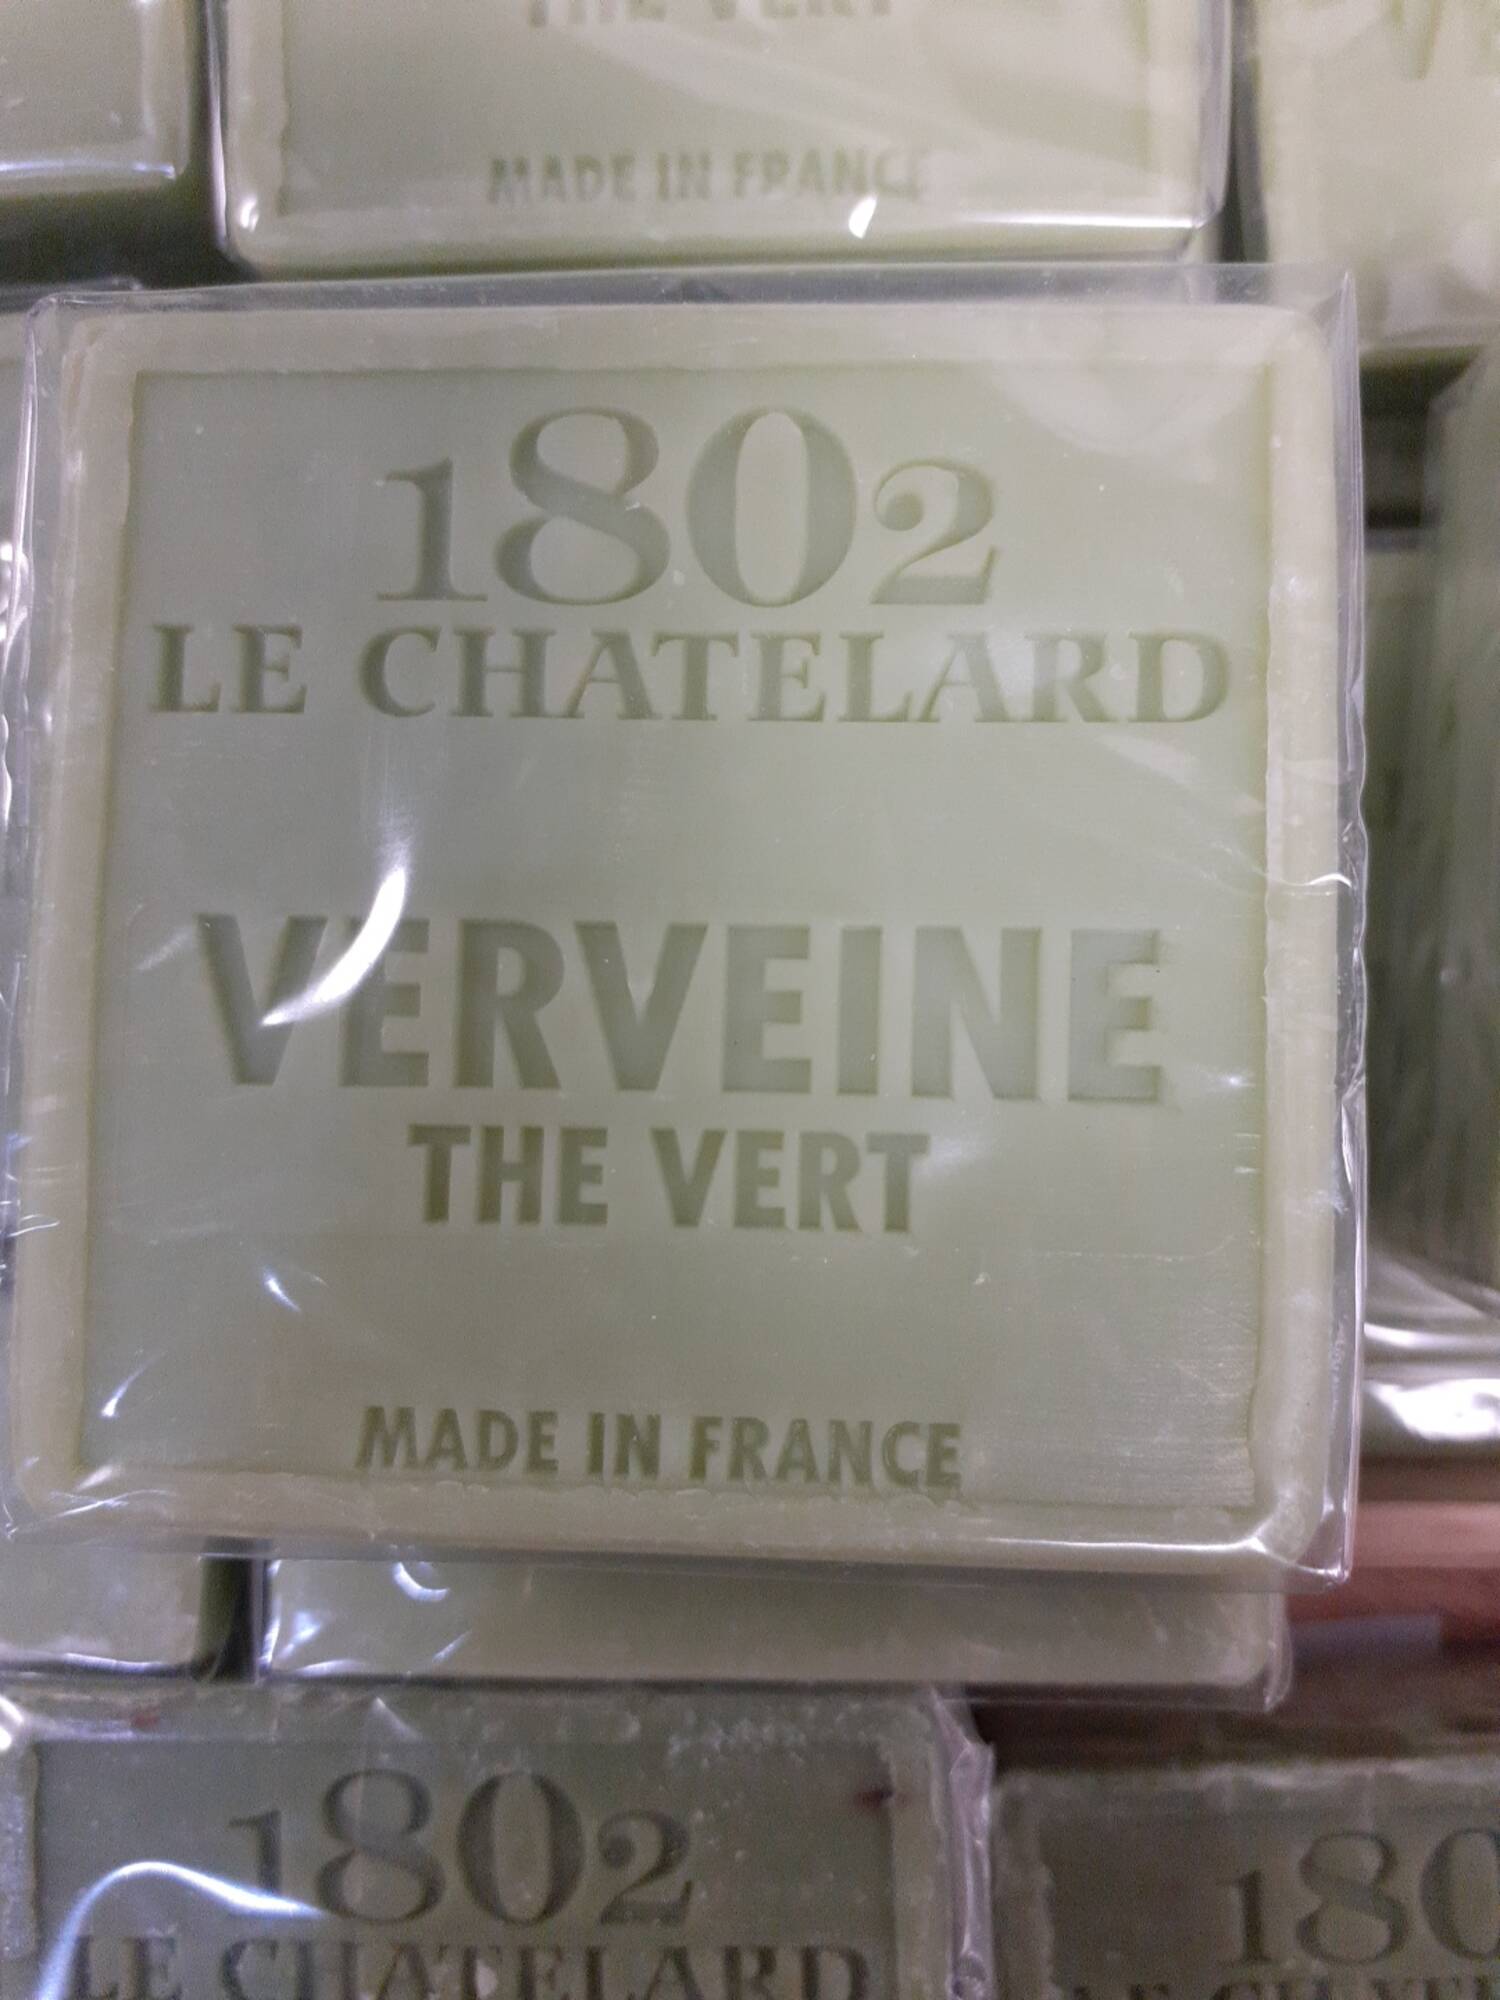 1802 LE CHATELARD - Verveine thé vert  - Savon carré